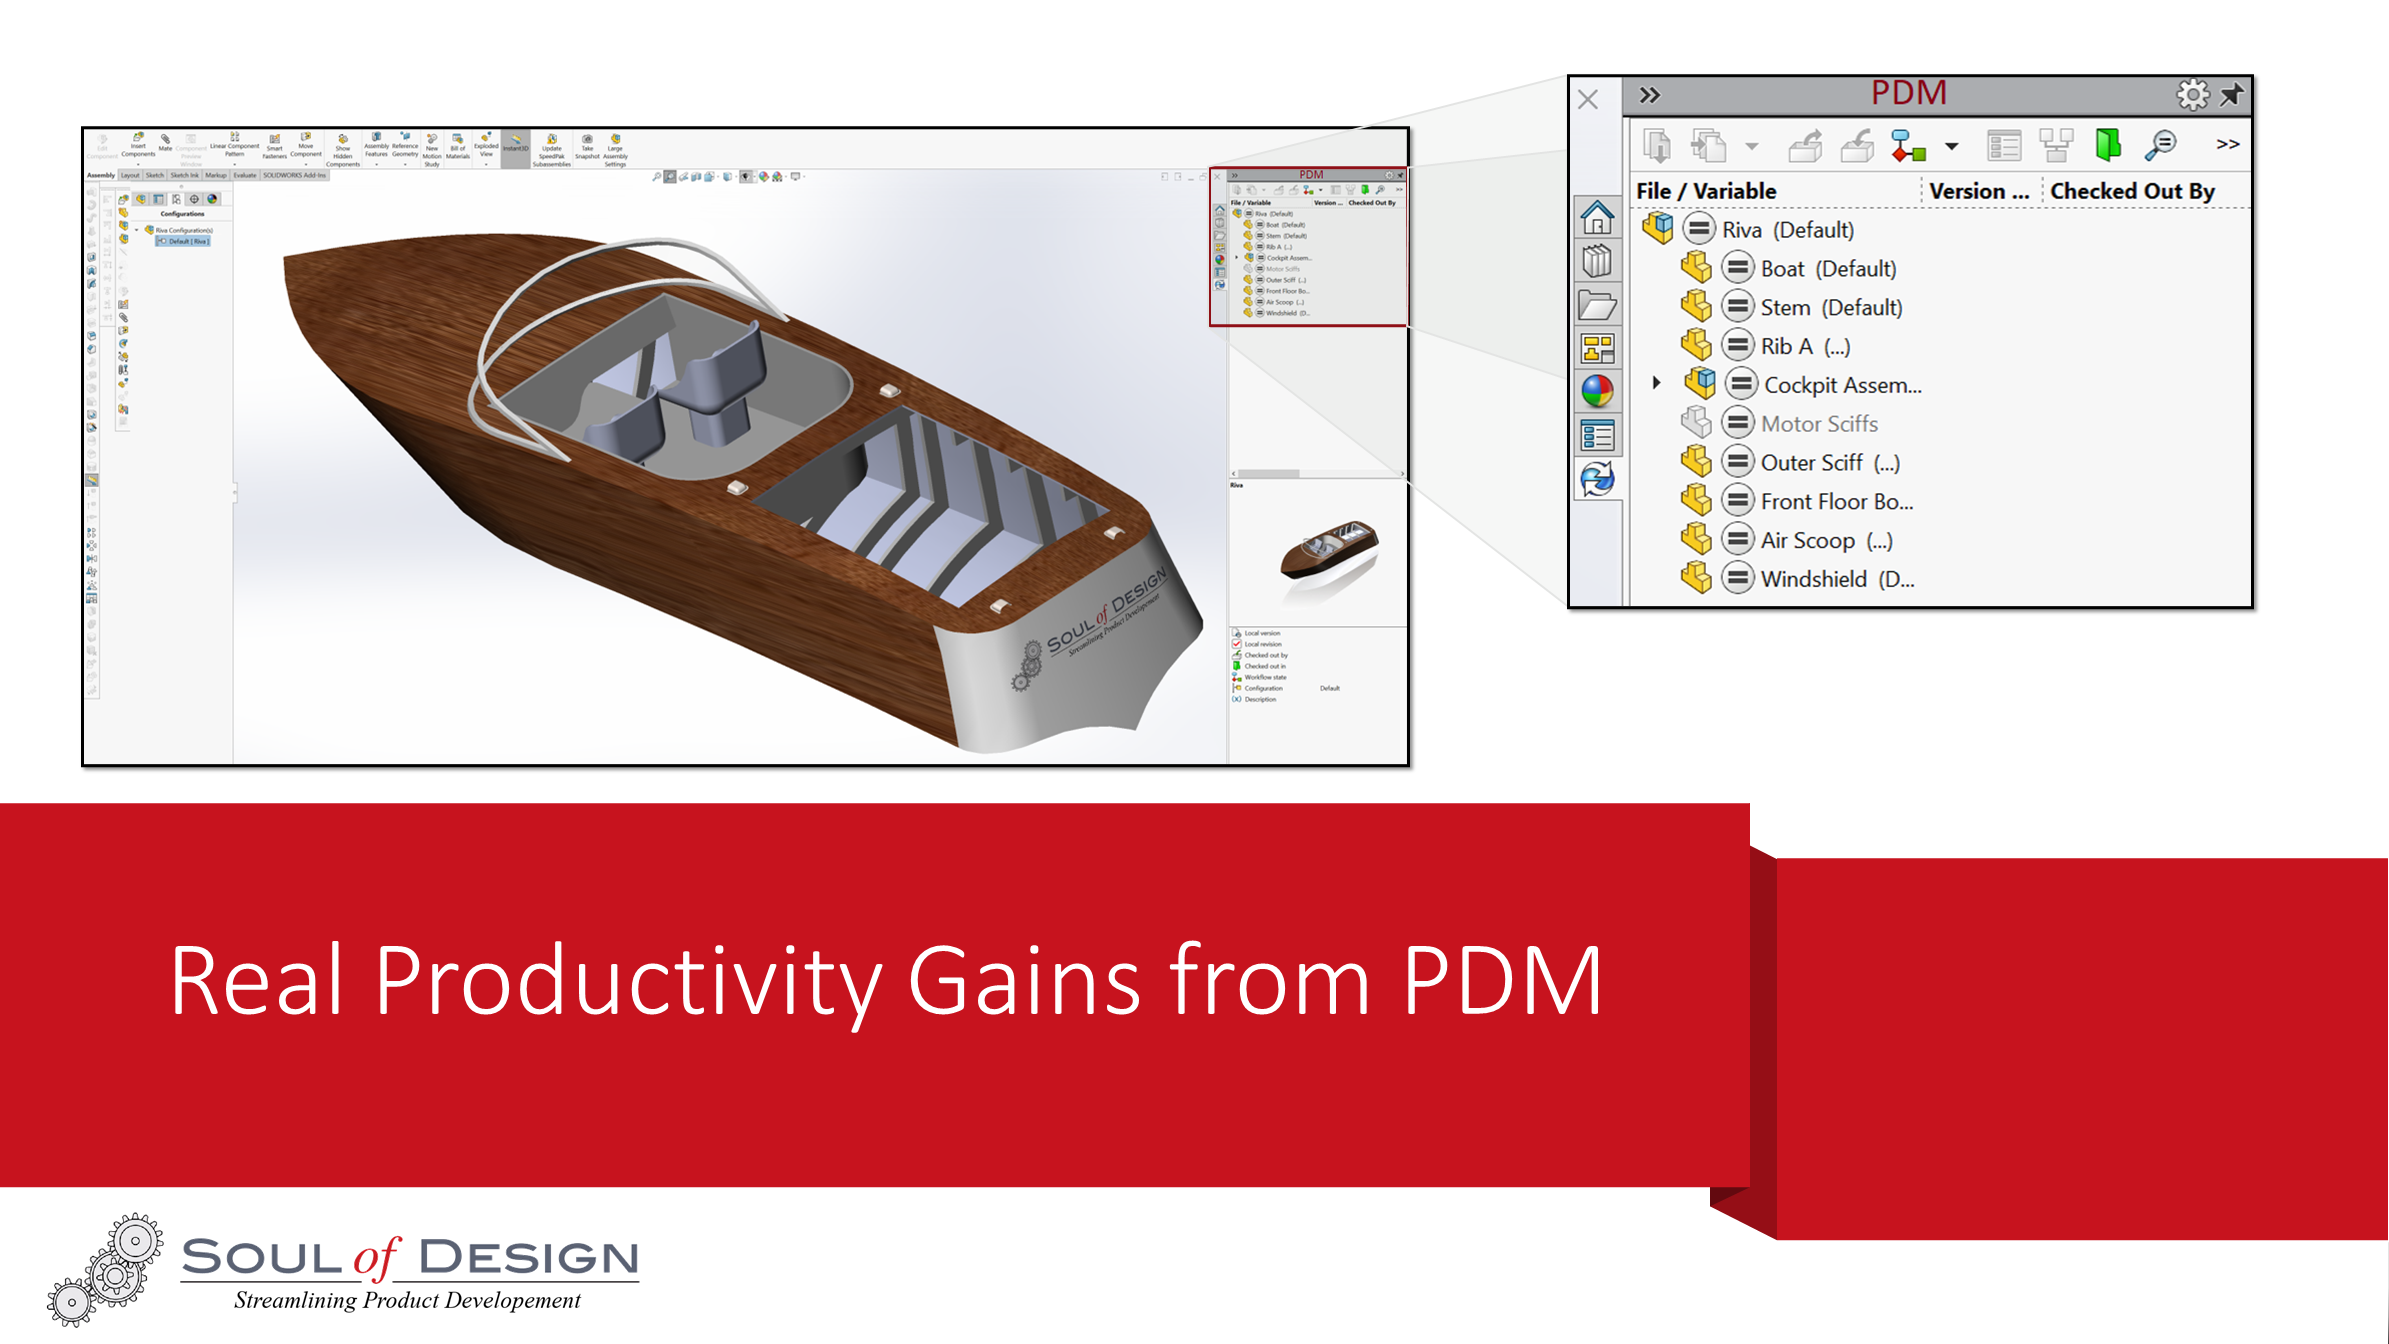 PDM Productivity Gains